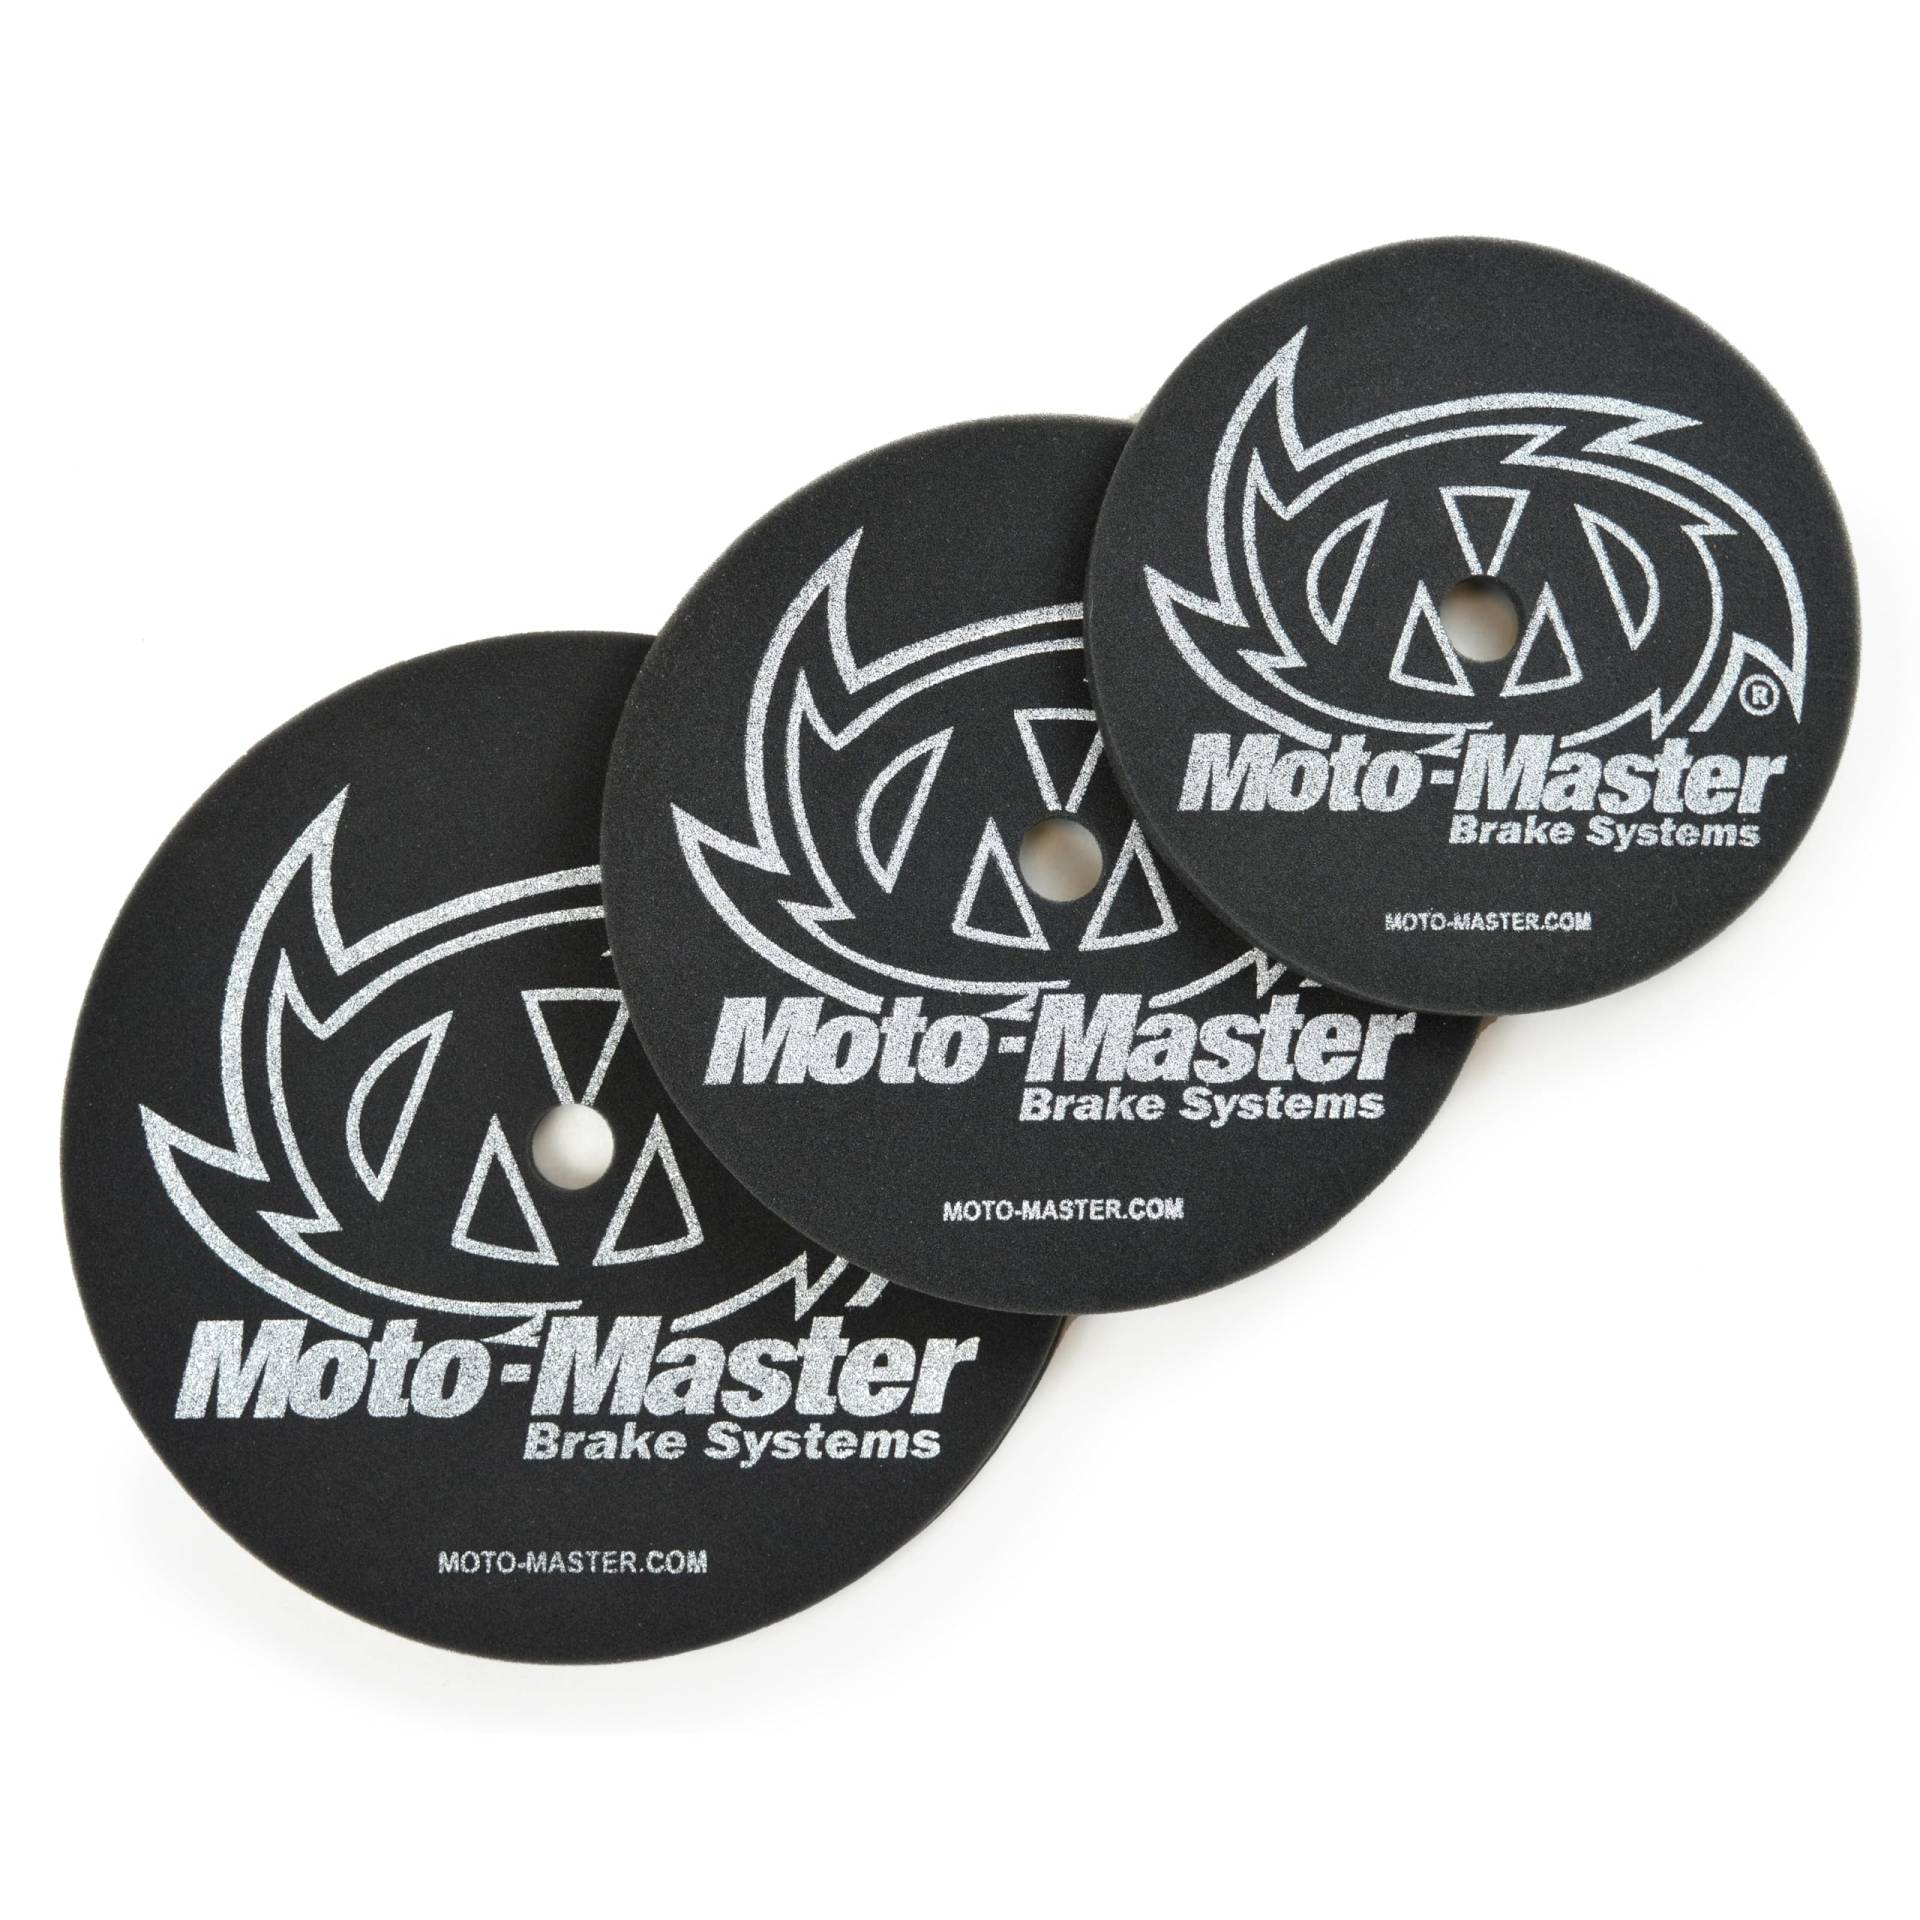 Moto Master Moto-Master Foam 280 mm - 330 mm von Moto Master